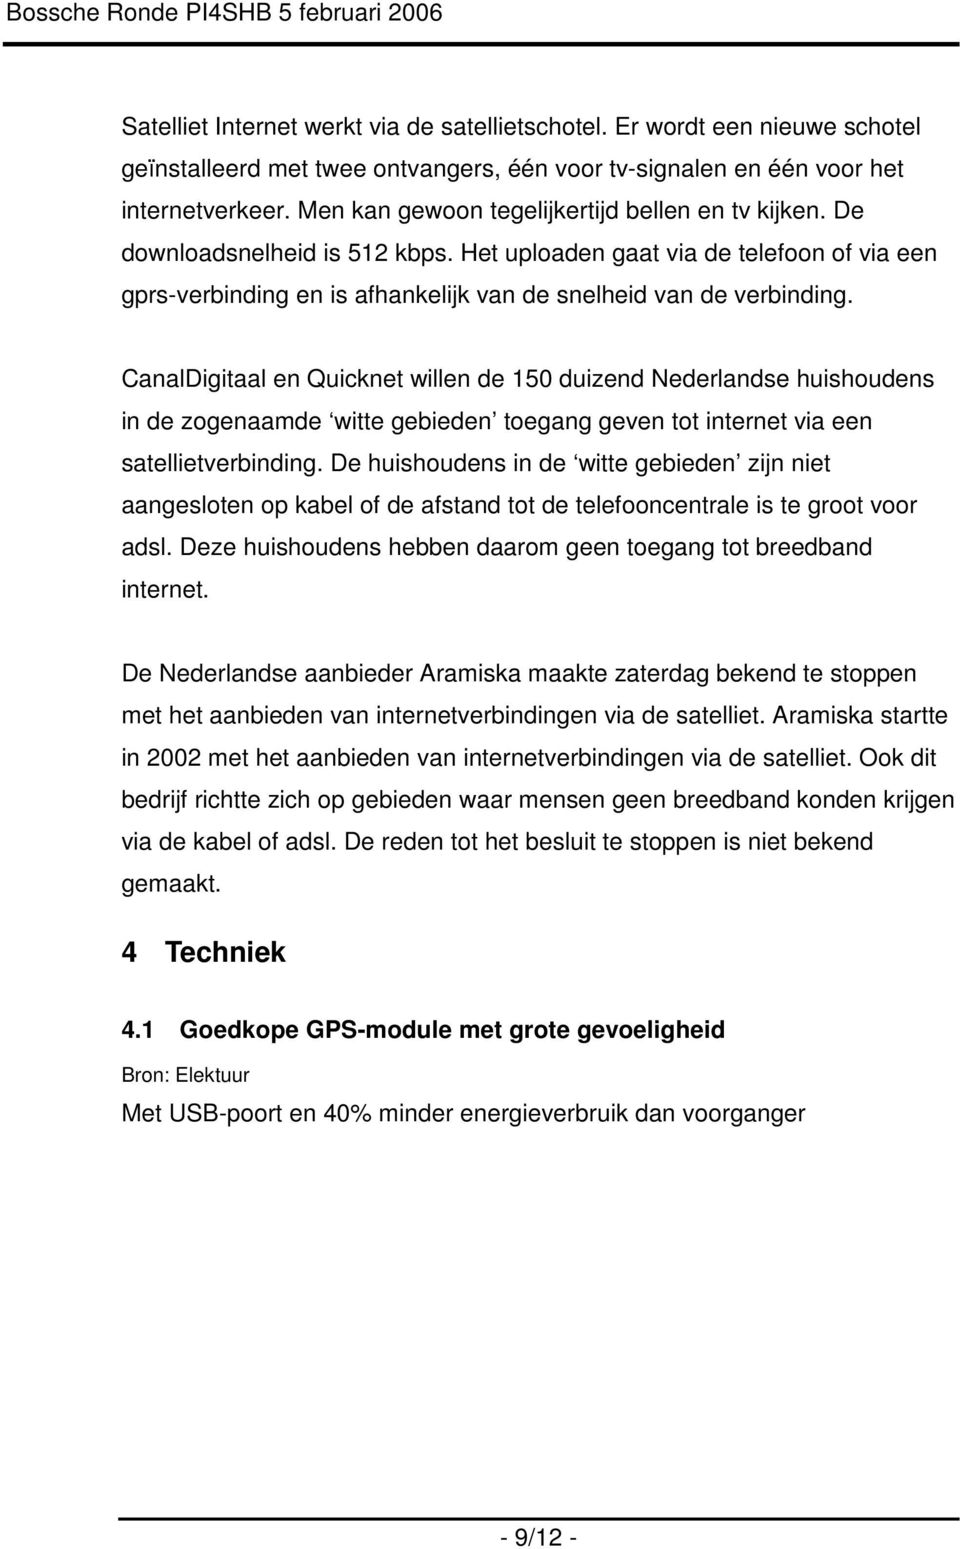 CanalDigitaal en Quicknet willen de 150 duizend Nederlandse huishoudens in de zogenaamde witte gebieden toegang geven tot internet via een satellietverbinding.